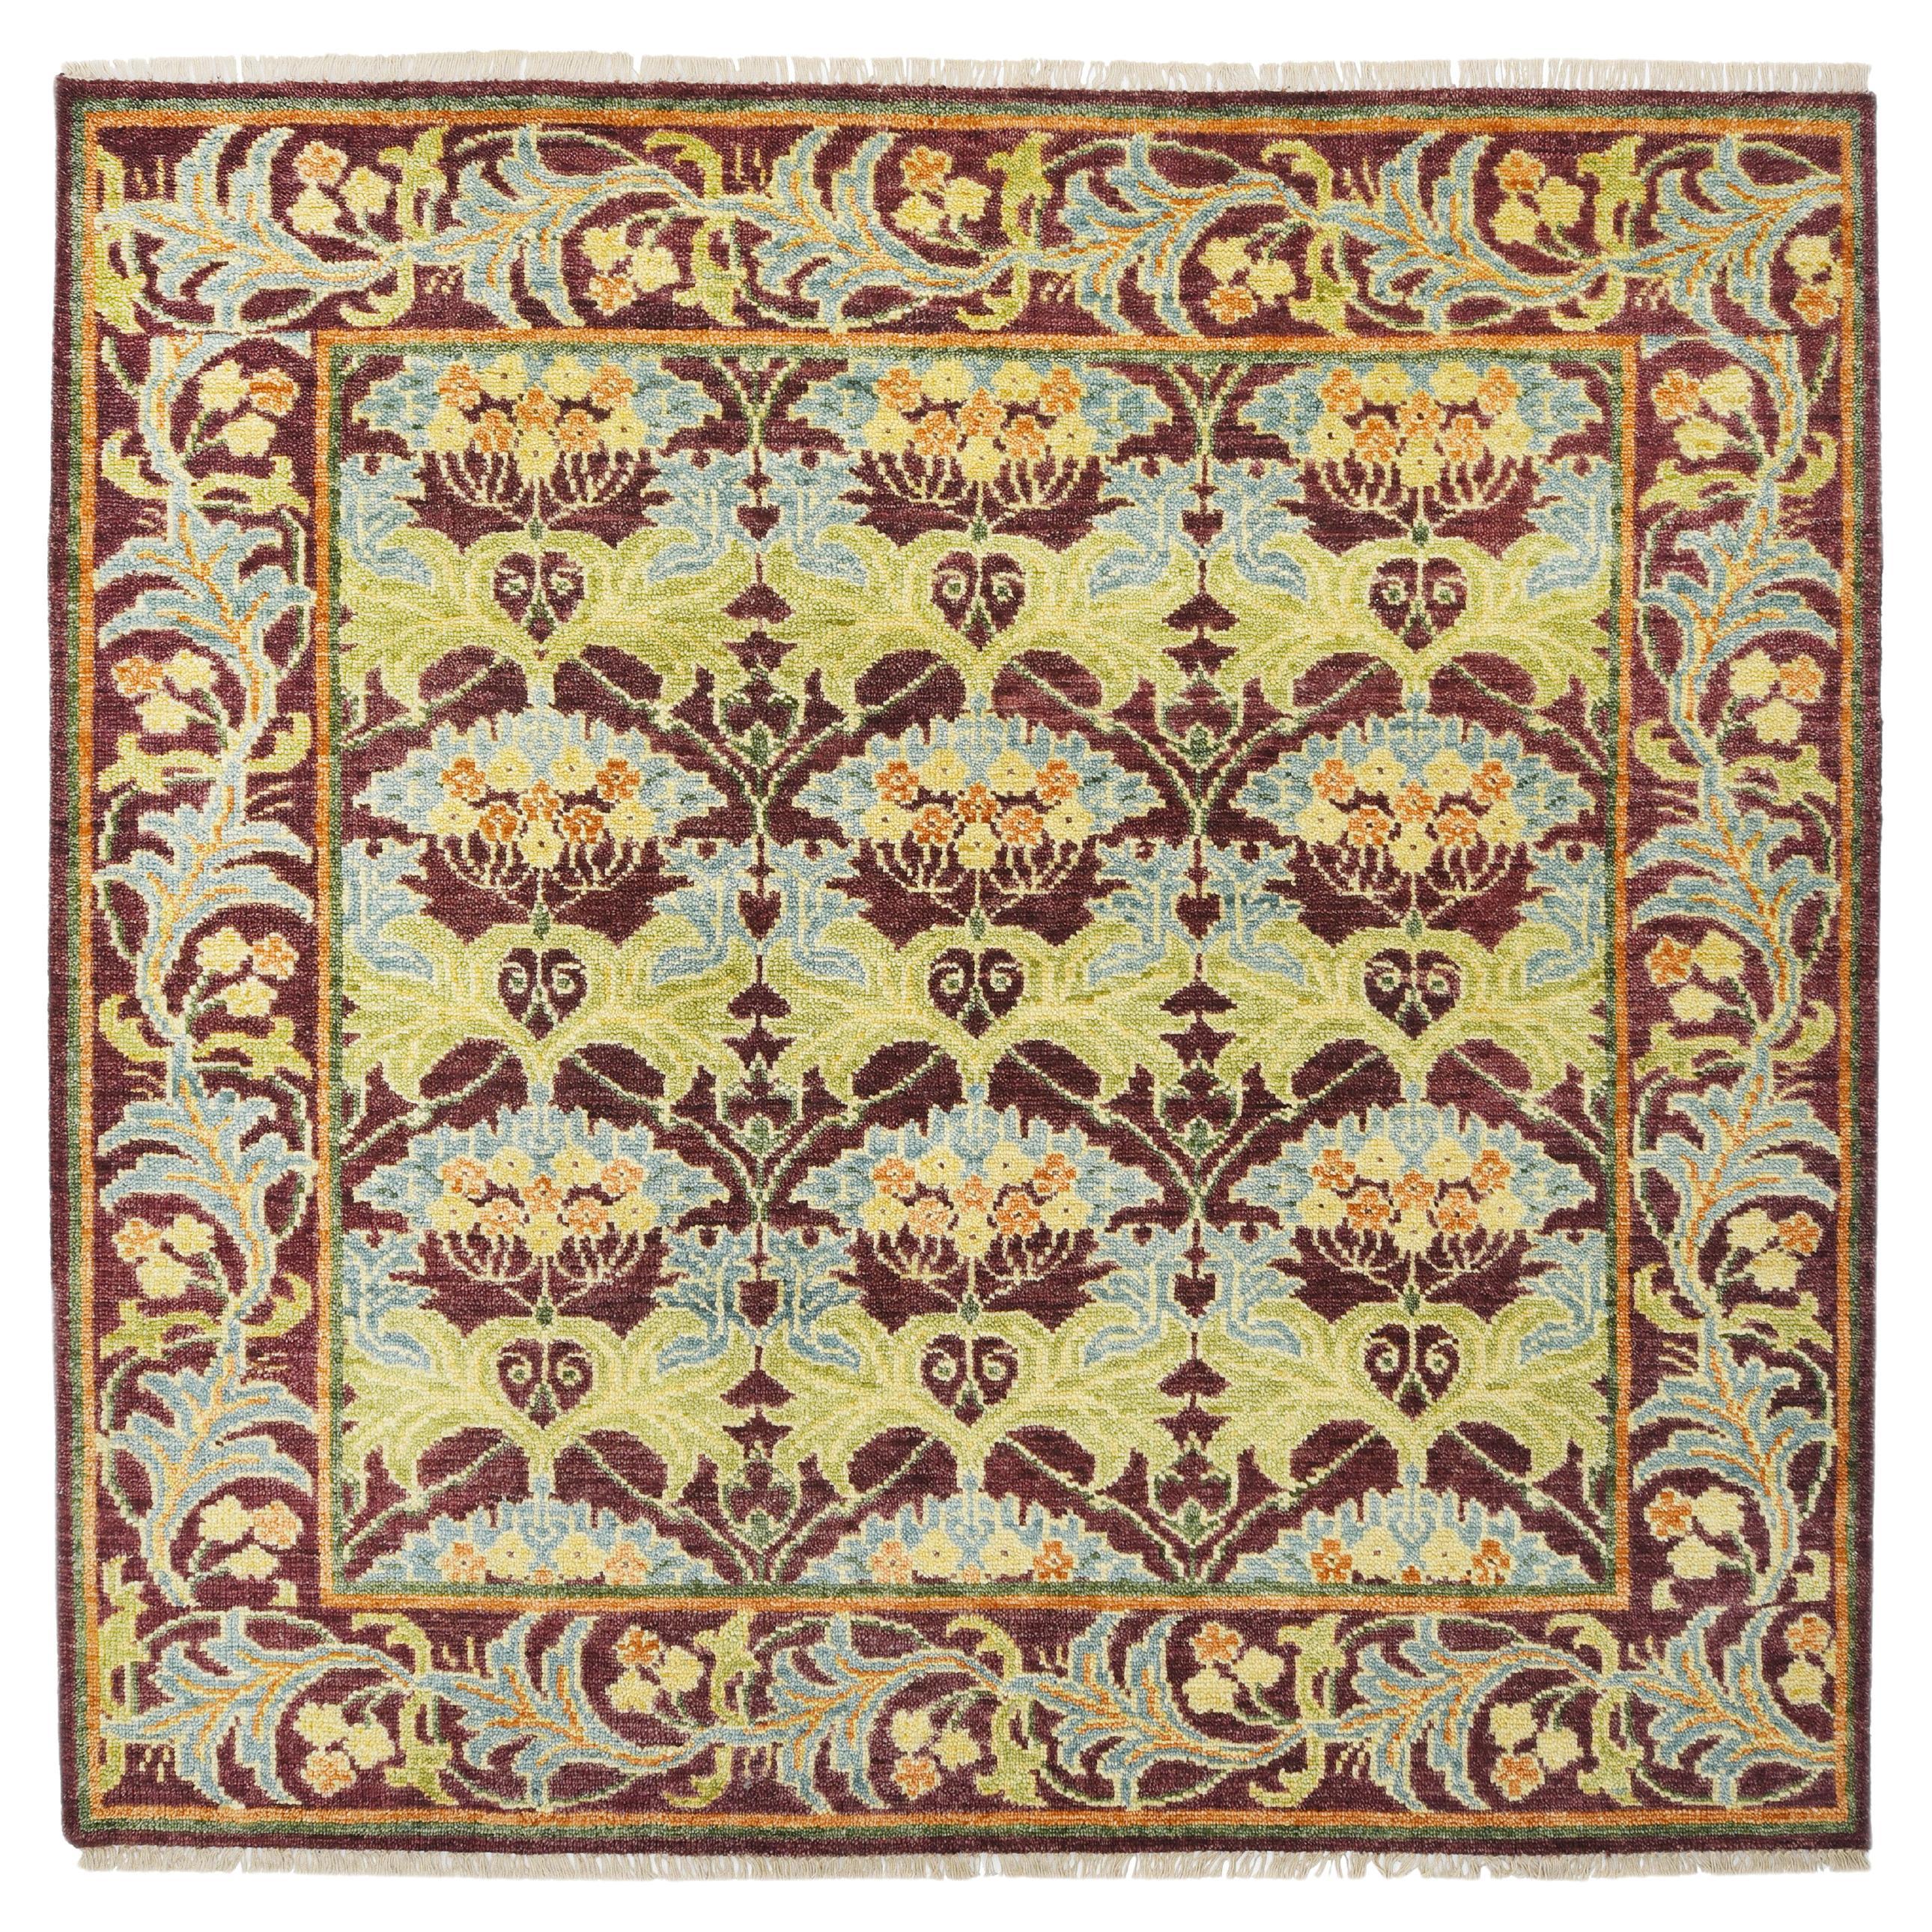 William Morris inspirierter Burgunderfarbener Teppich